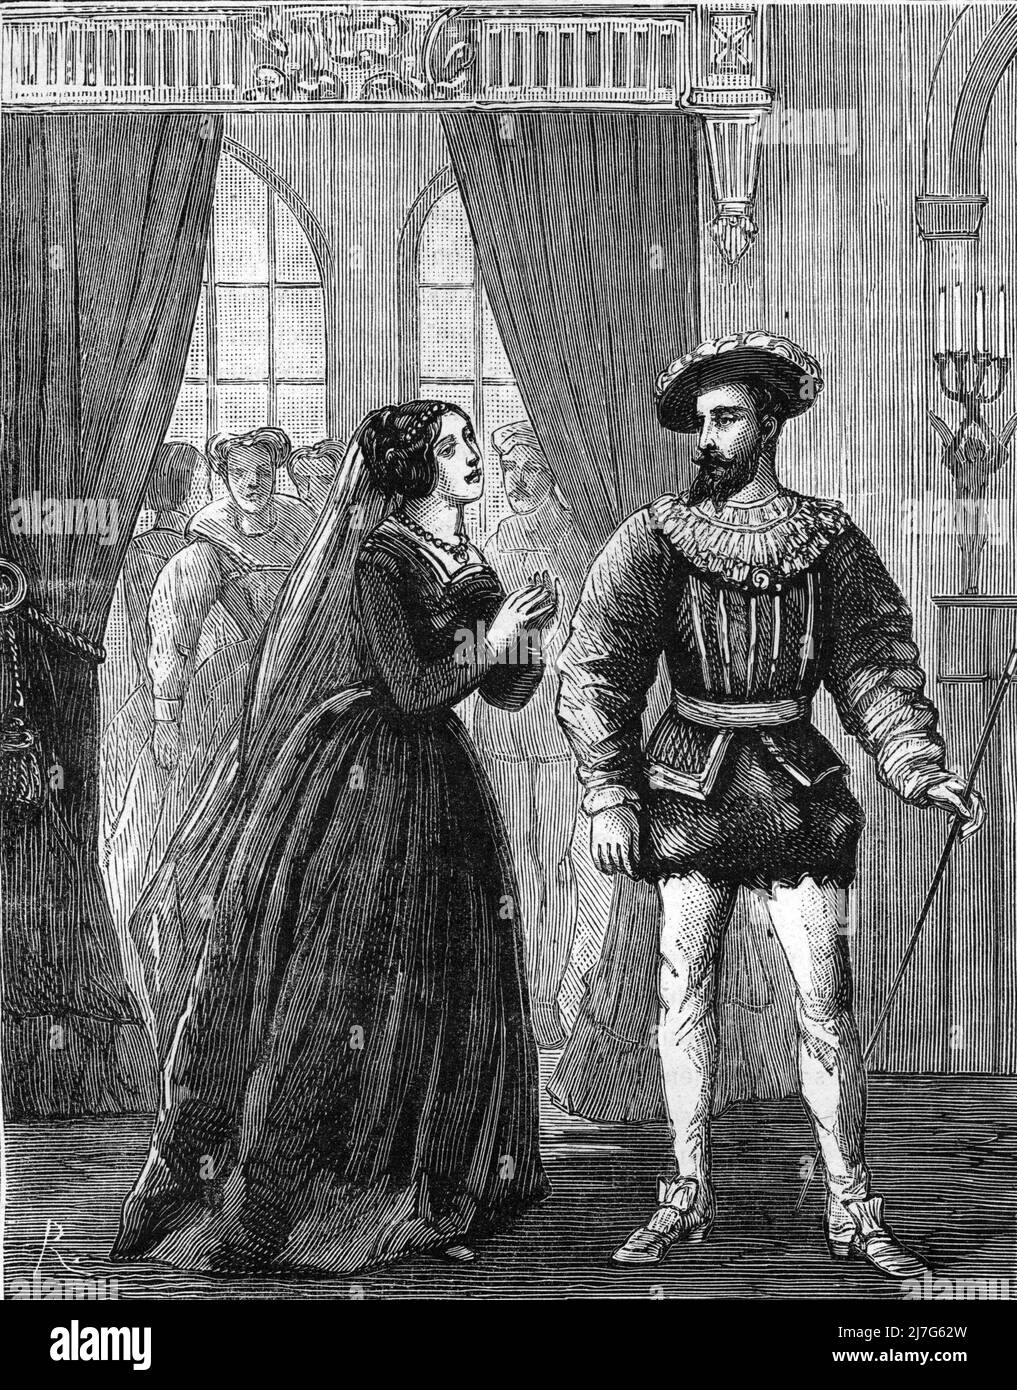 'Diane de Poitiers (1500-1566) demandant au roi Francois Ier la Grace pour son pere Jean de Poitiers-Valentinois (?-1539) accuse de complicite dans la trahison du connetable de Bourbon 1524 ) (nel 1524, Diane de Poitiers, che chiedeva a Francesco la misericordia per il suo Jean de Poitiers, è stato accusato di tradimento e condannato a morte, Ma la sua sentenza fu commutato - fu invece confinato in prigione fino al Trattato di Madrid nel 1526) gravure tiree de 'Les mysteres du Grand monde' de Fulgence Girard Collection privee Foto Stock